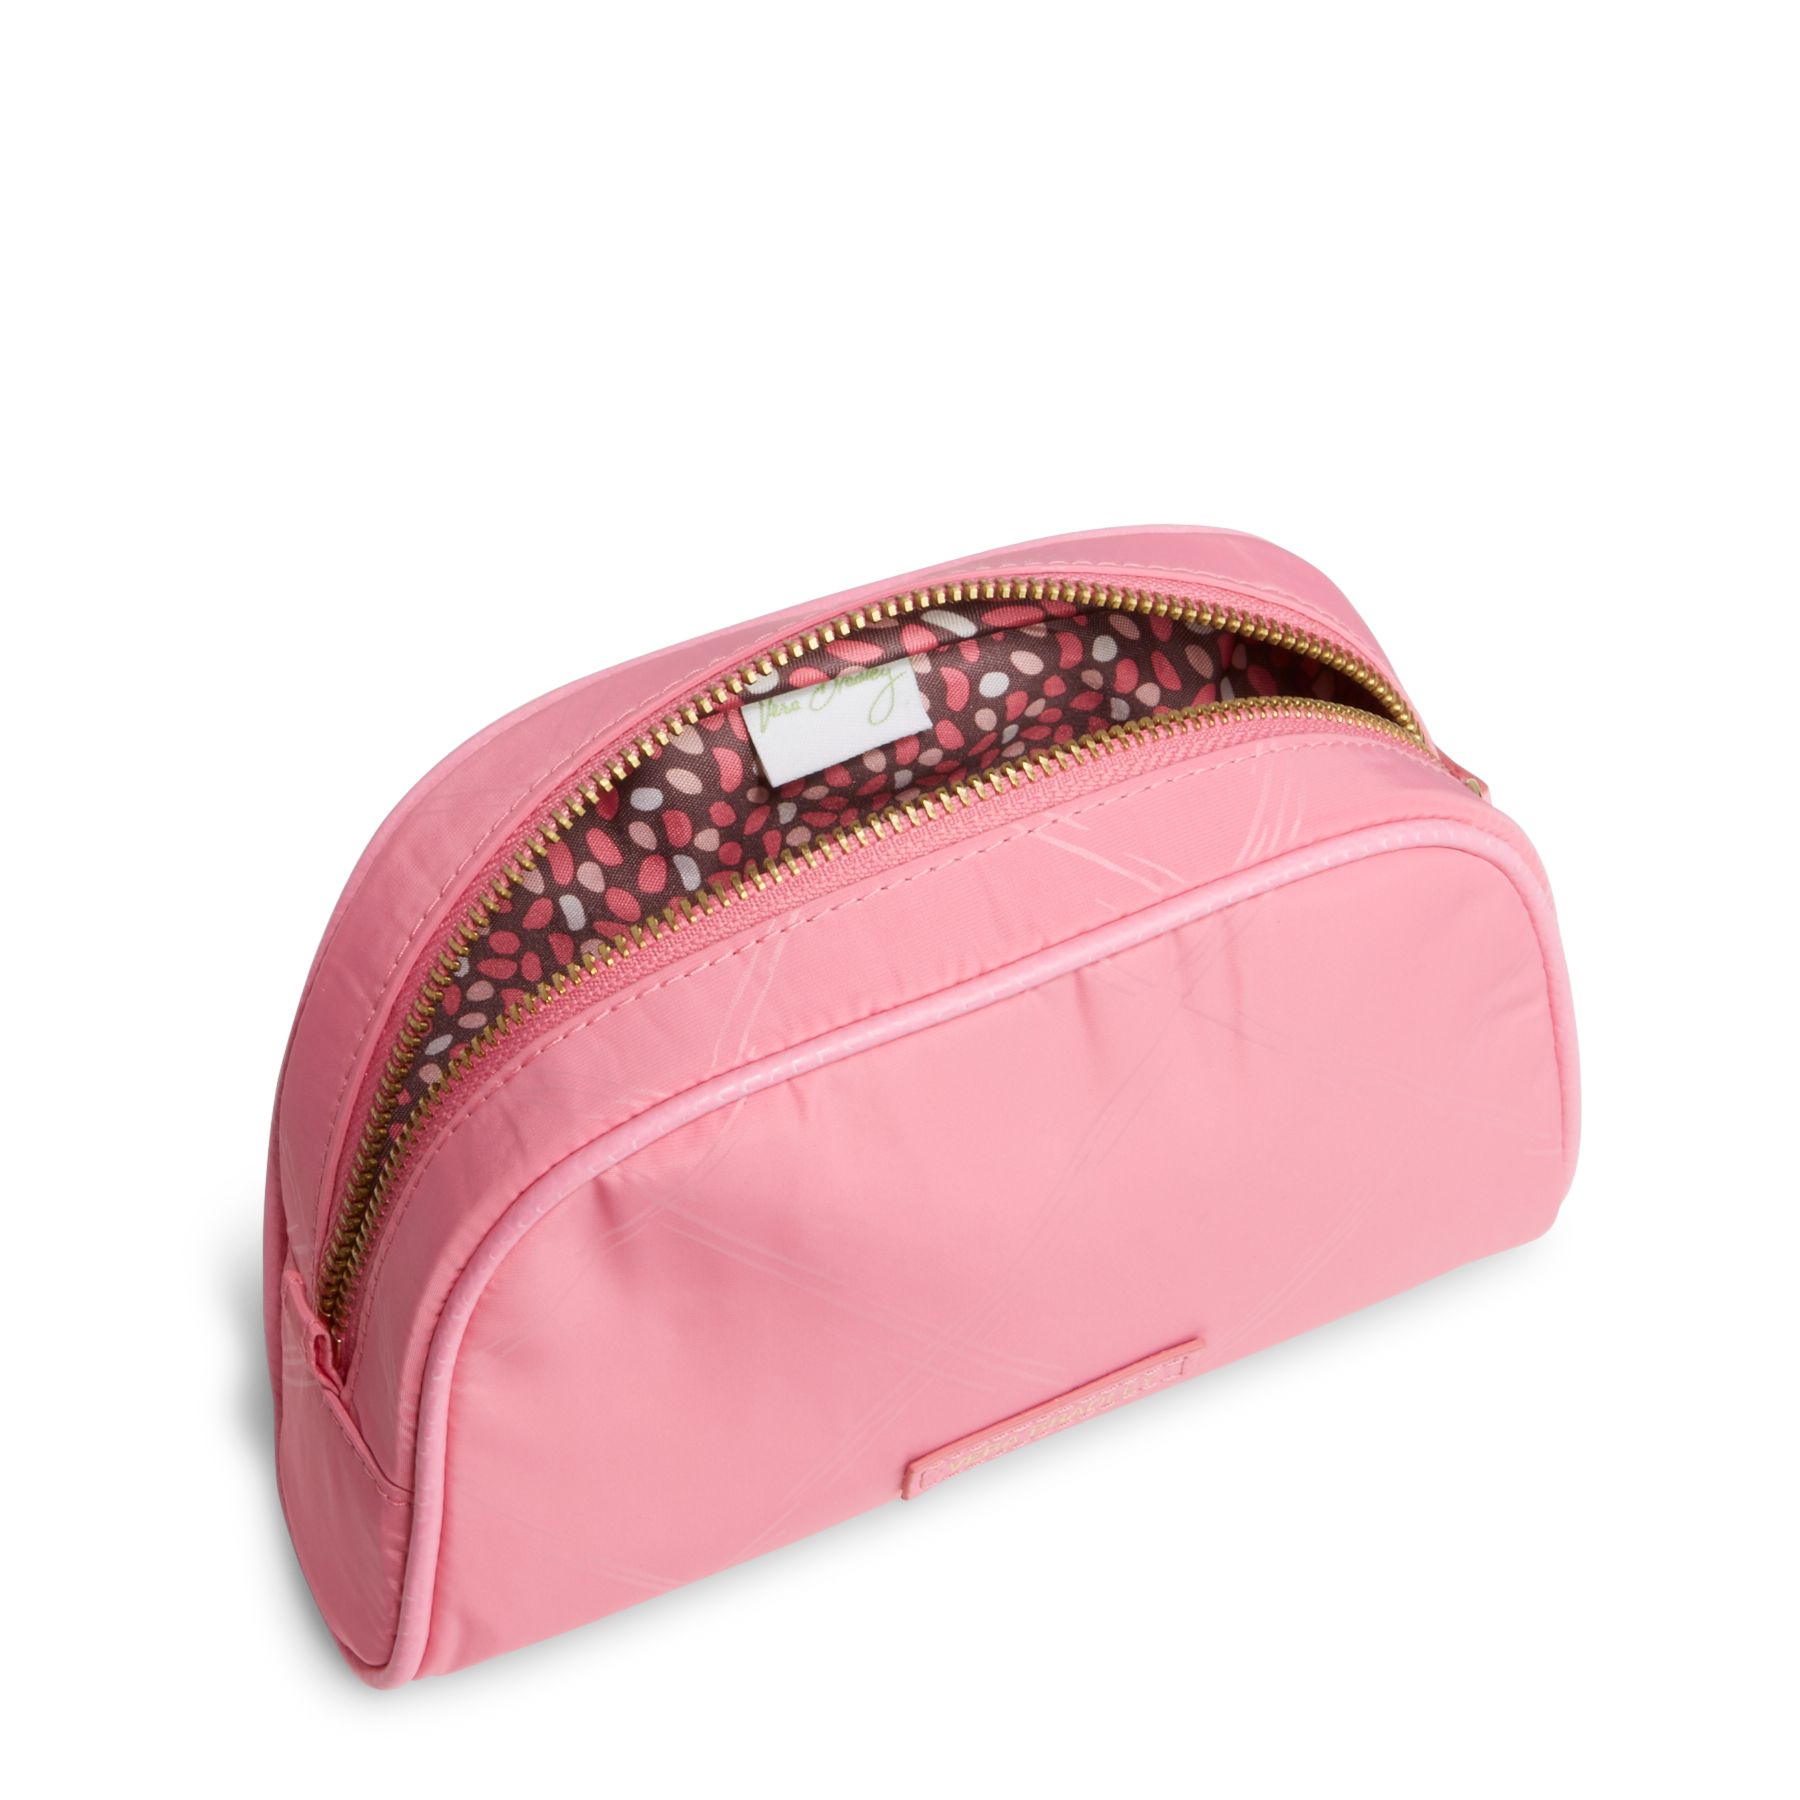 Vera Bradley Preppy Poly Small Cosmetic Bag | eBay